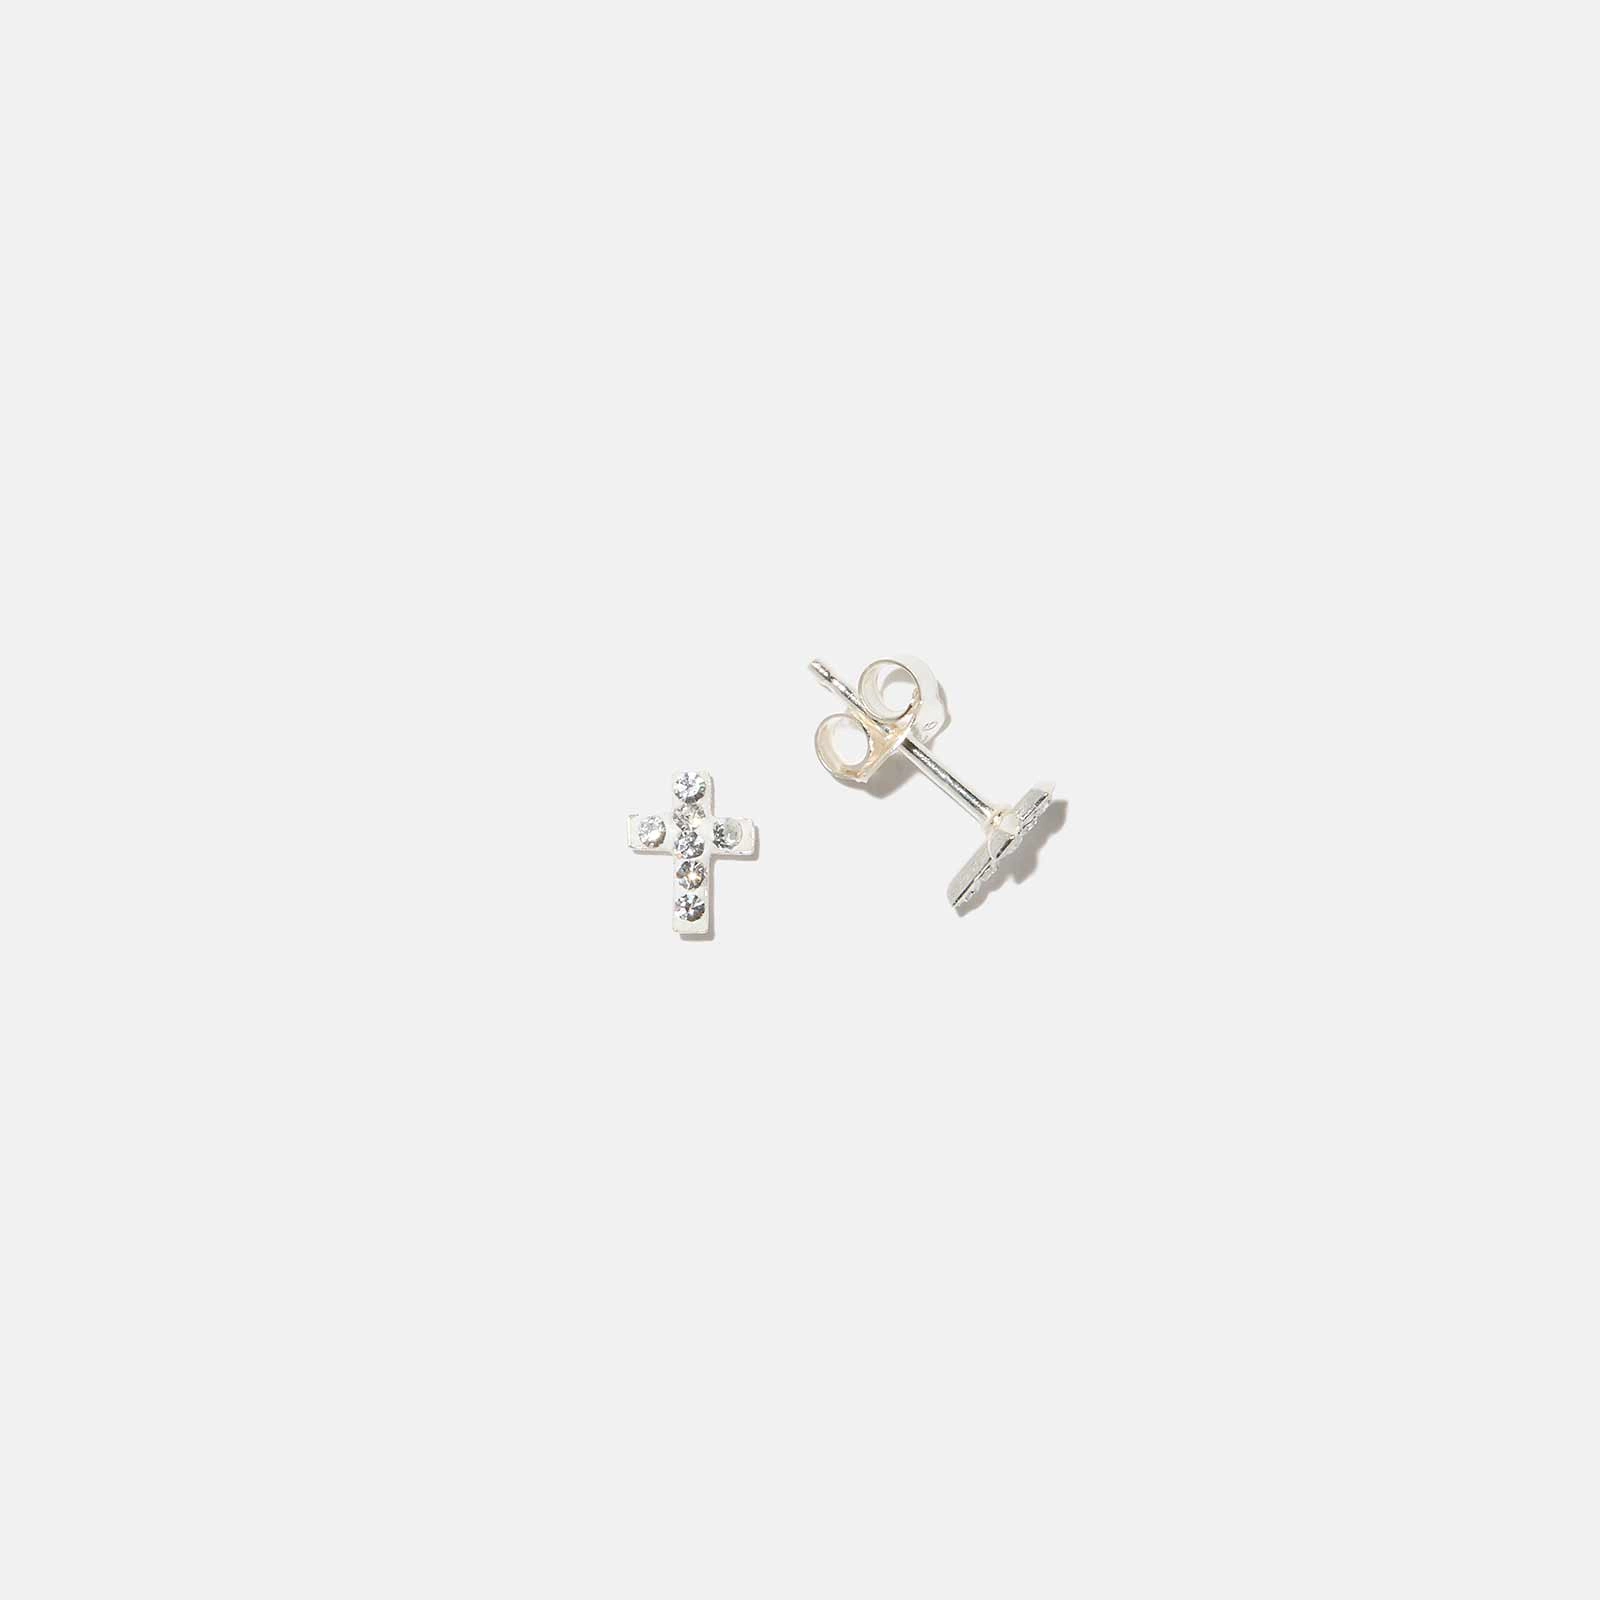 Silverörhängen för barn - vita kors med stenar